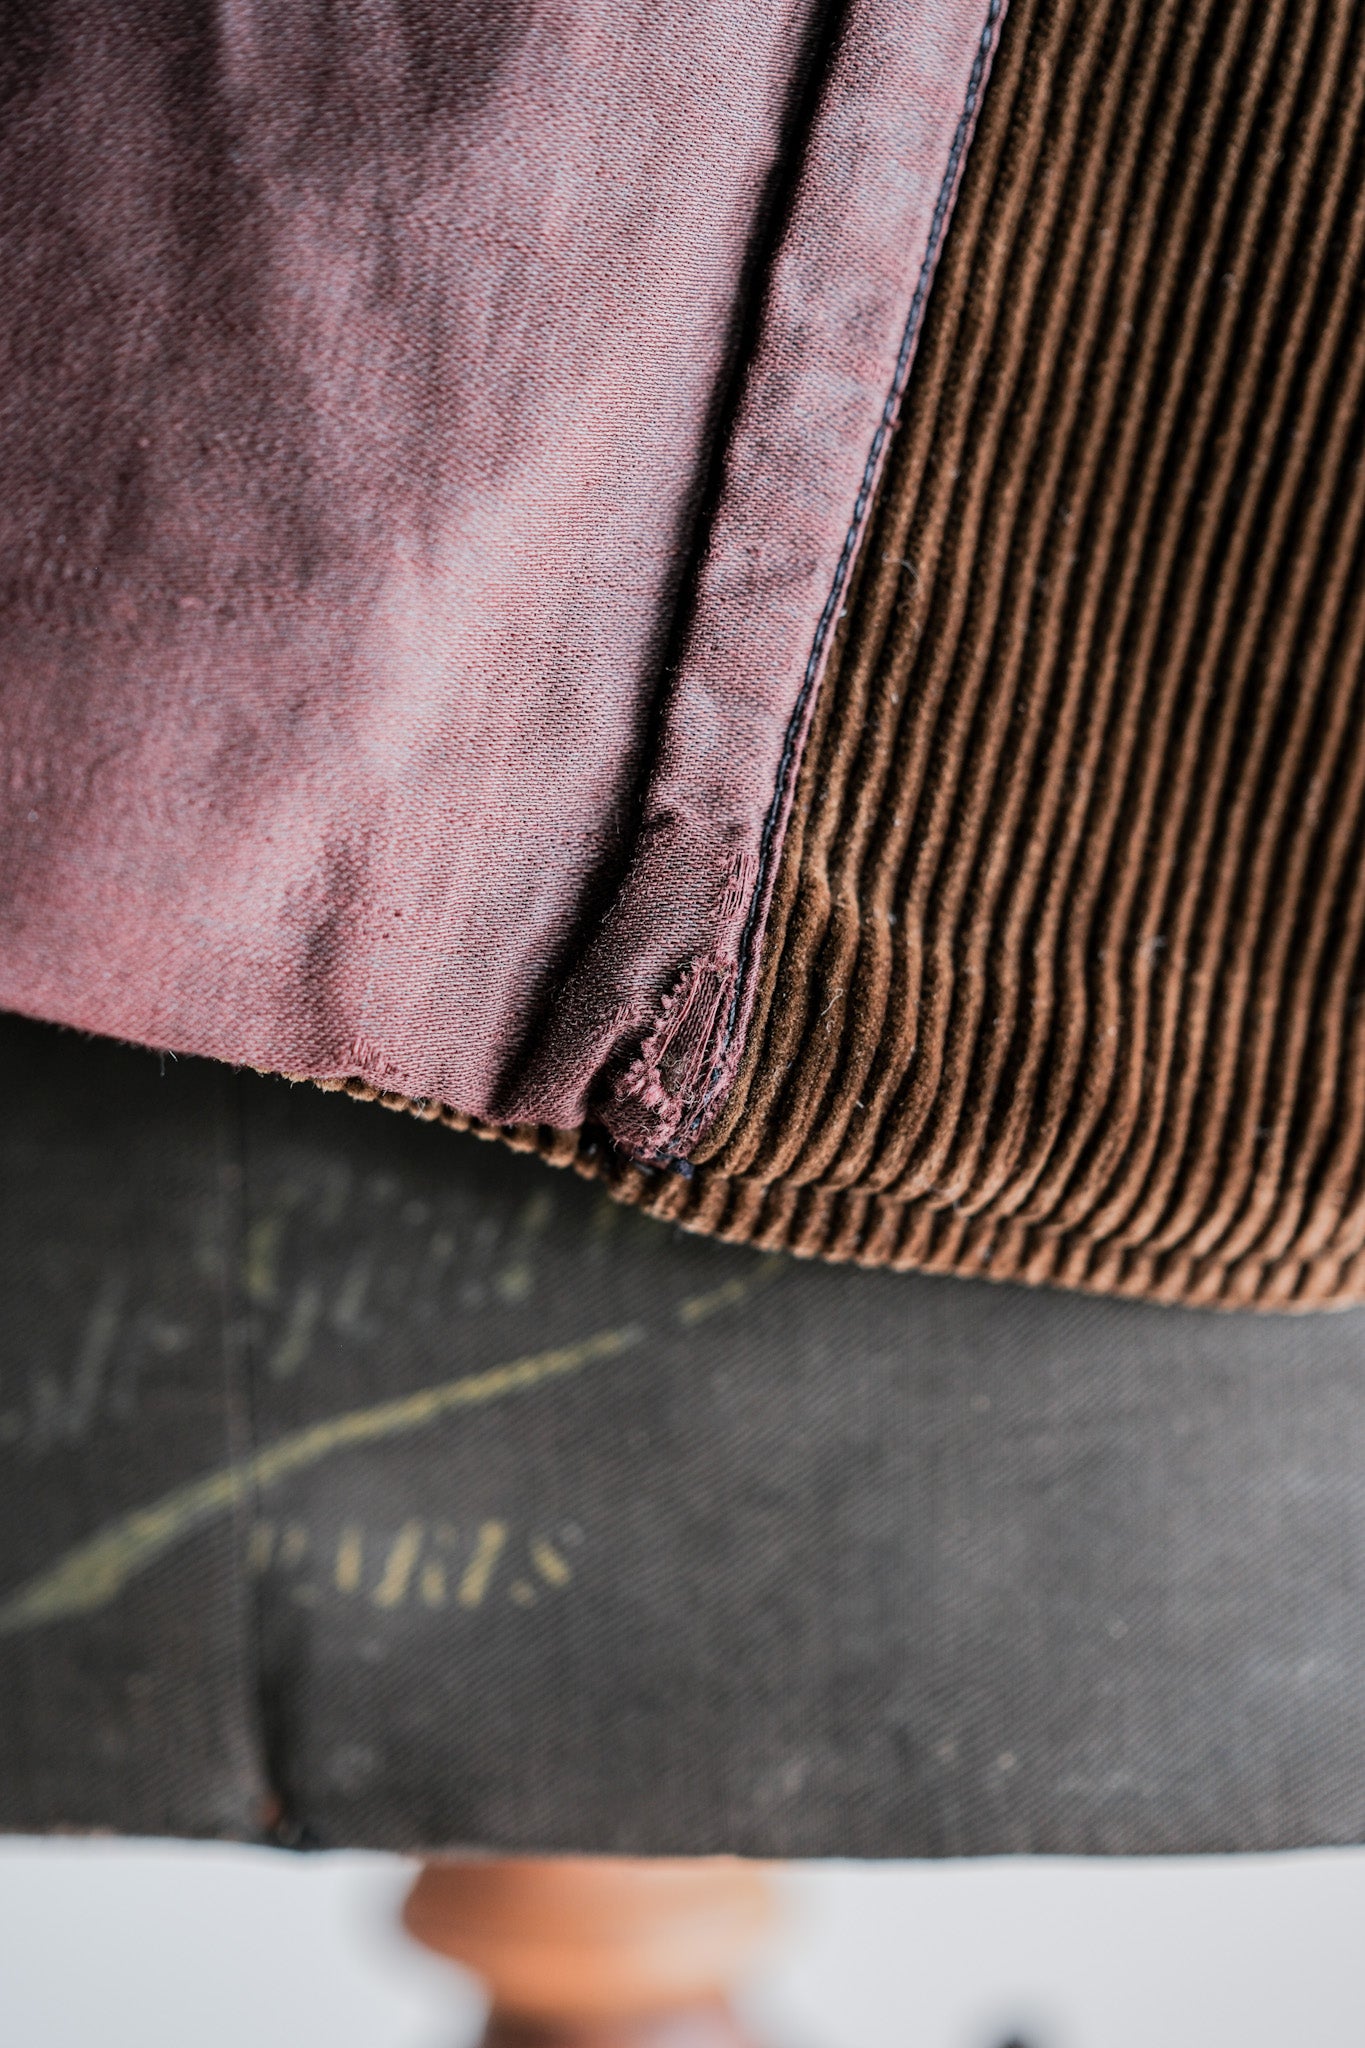 [~ 40 '] 프랑스 빈티지 브라운 코듀로이 옷깃 작업 재킷 "르 몽 세인트 미셸"